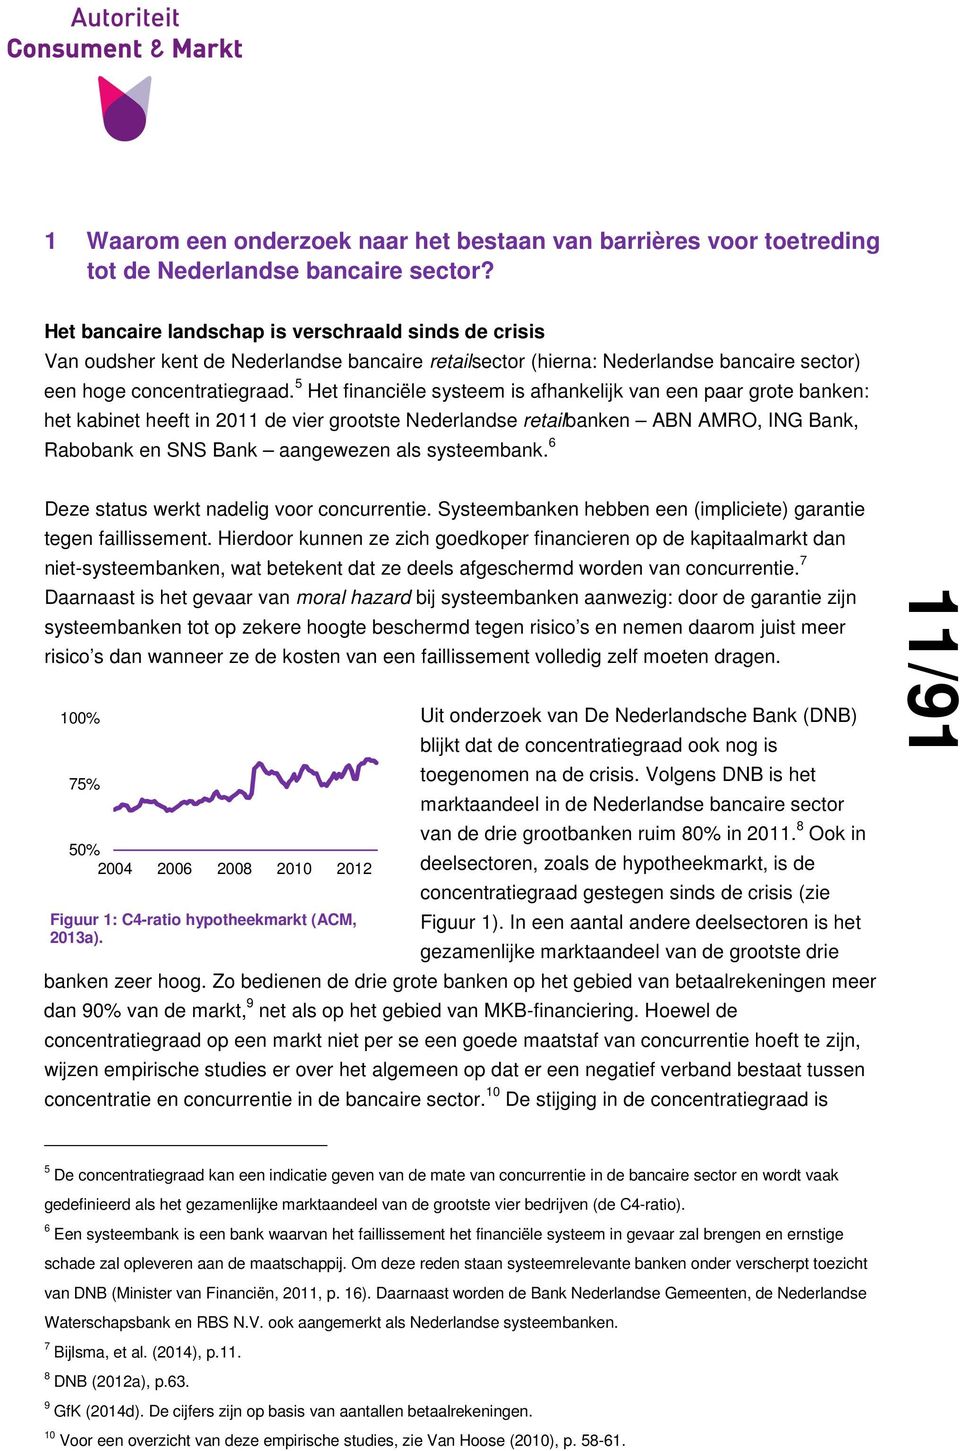 5 Het financiële systeem is afhankelijk van een paar grote banken: het kabinet heeft in 2011 de vier grootste Nederlandse retailbanken ABN AMRO, ING Bank, Rabobank en SNS Bank aangewezen als